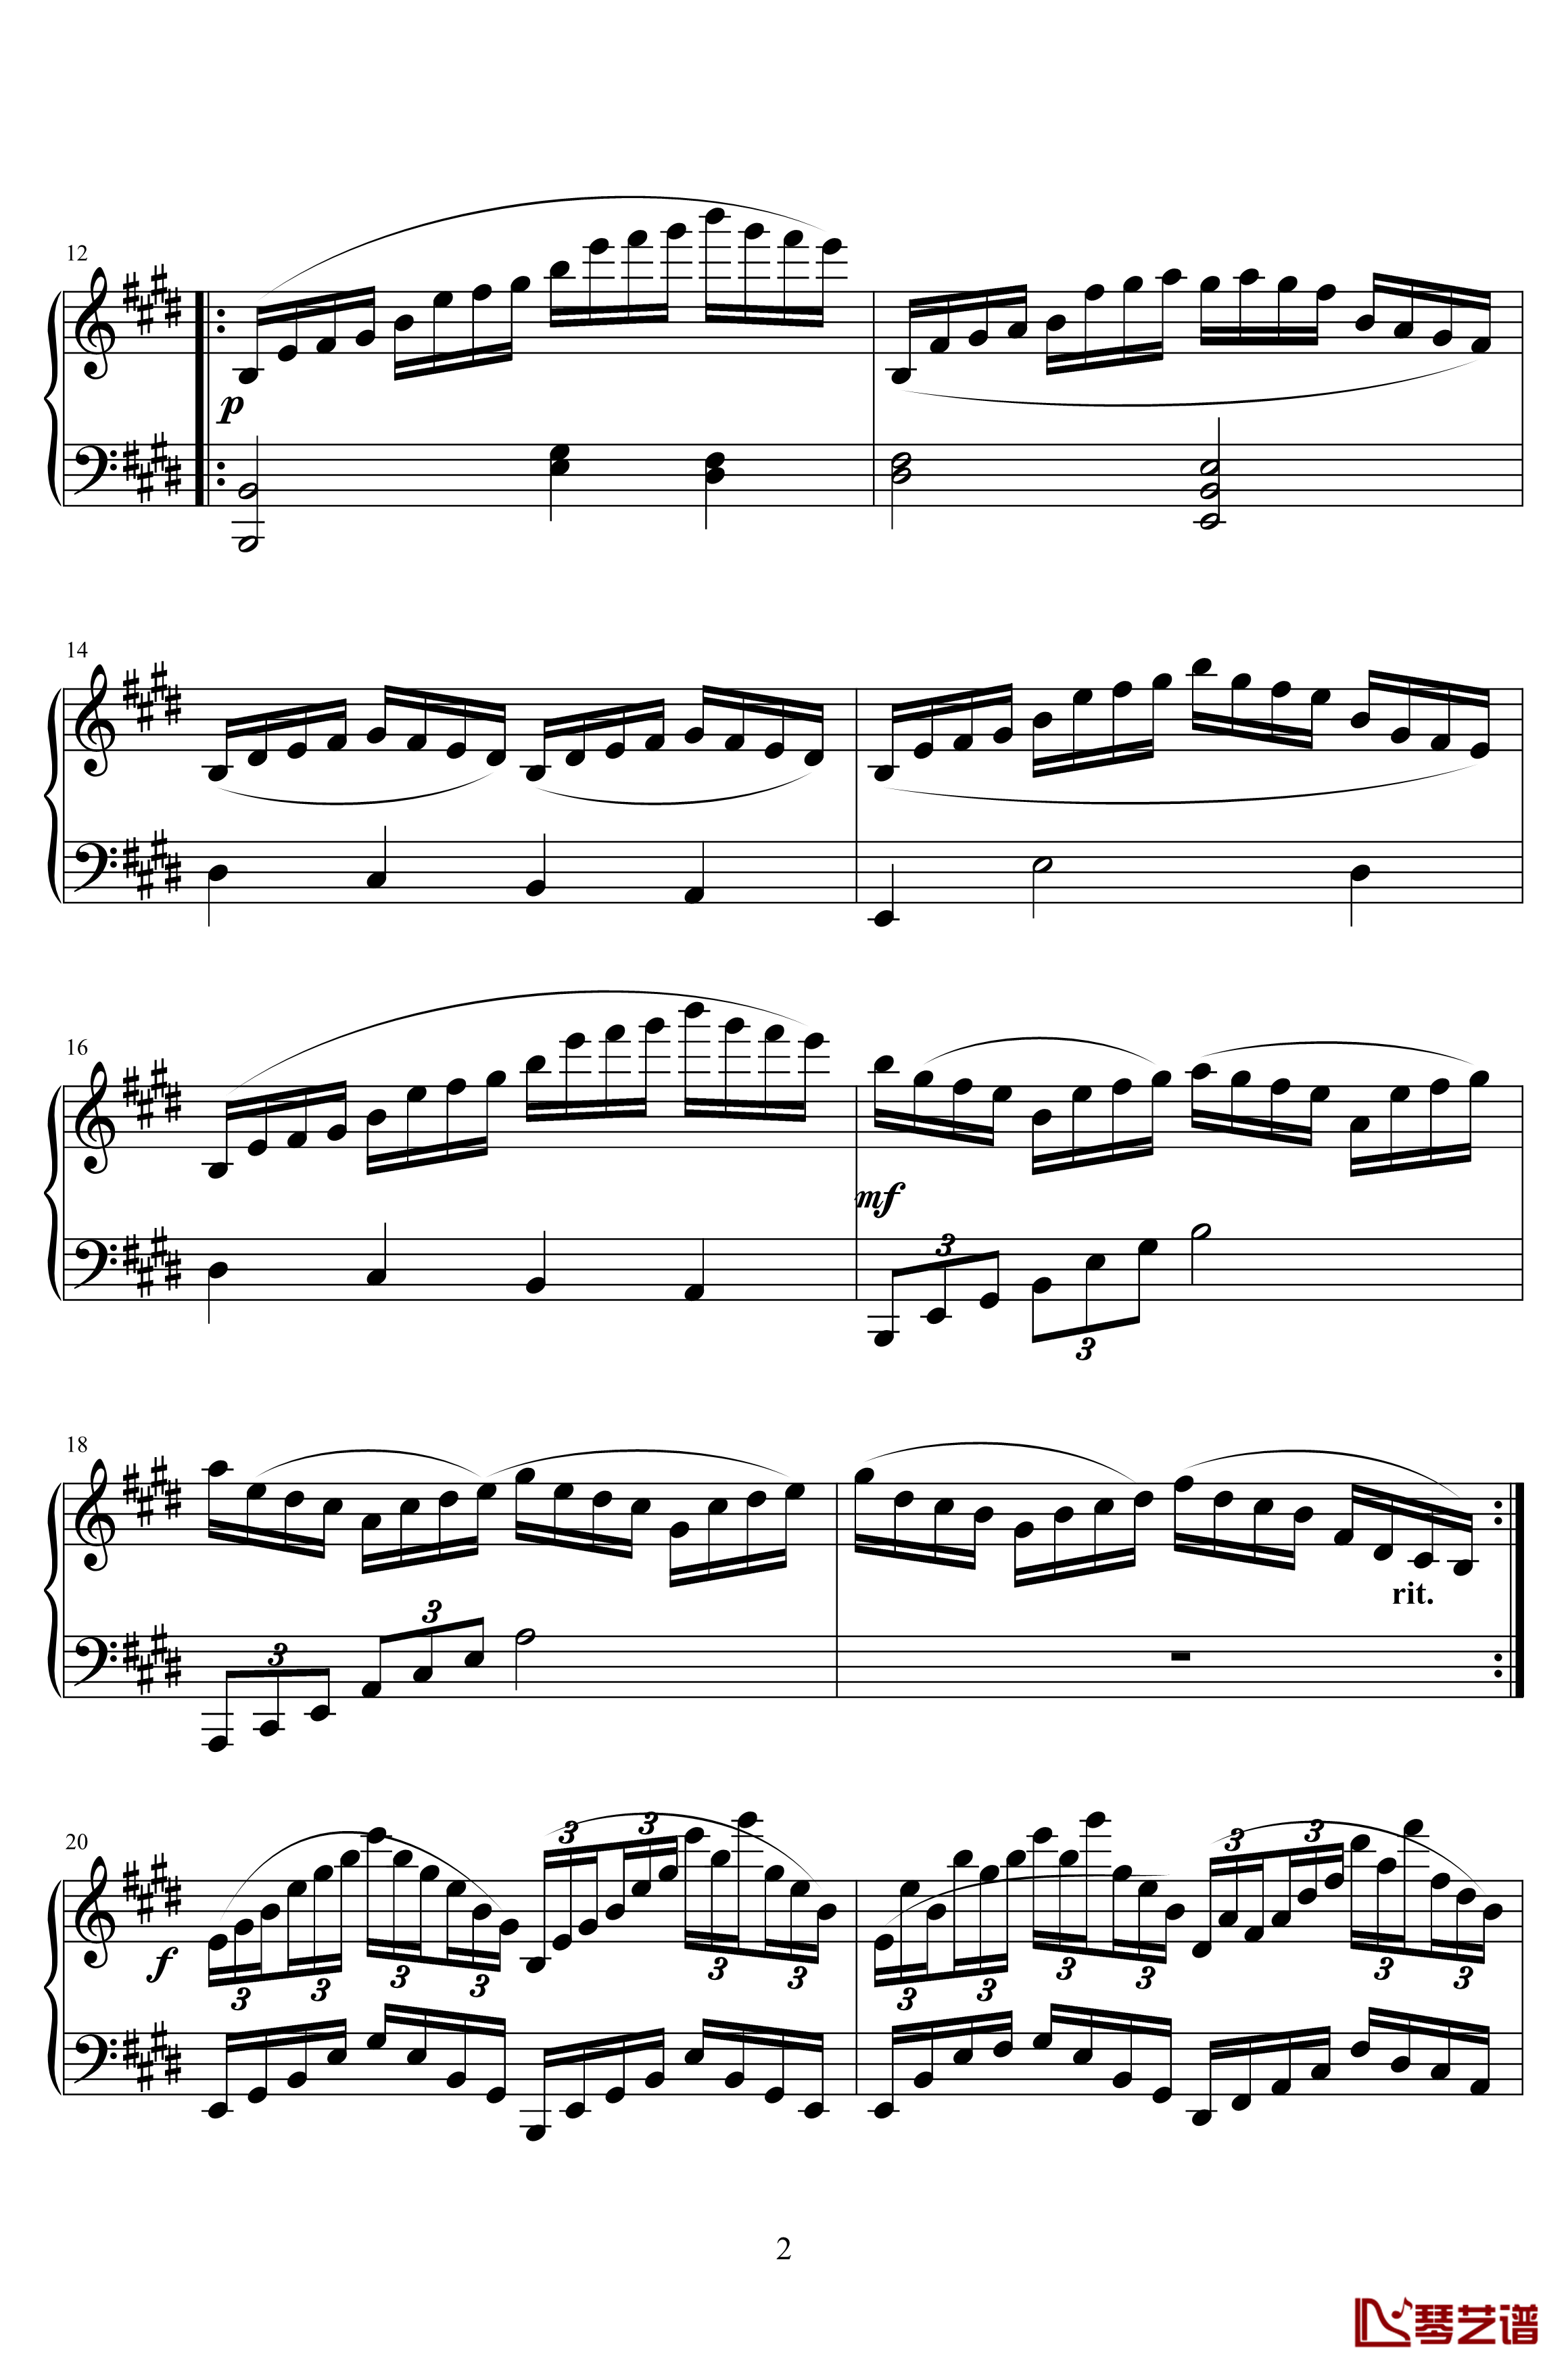 海洋钢琴谱-练习曲第一首-hrmc2